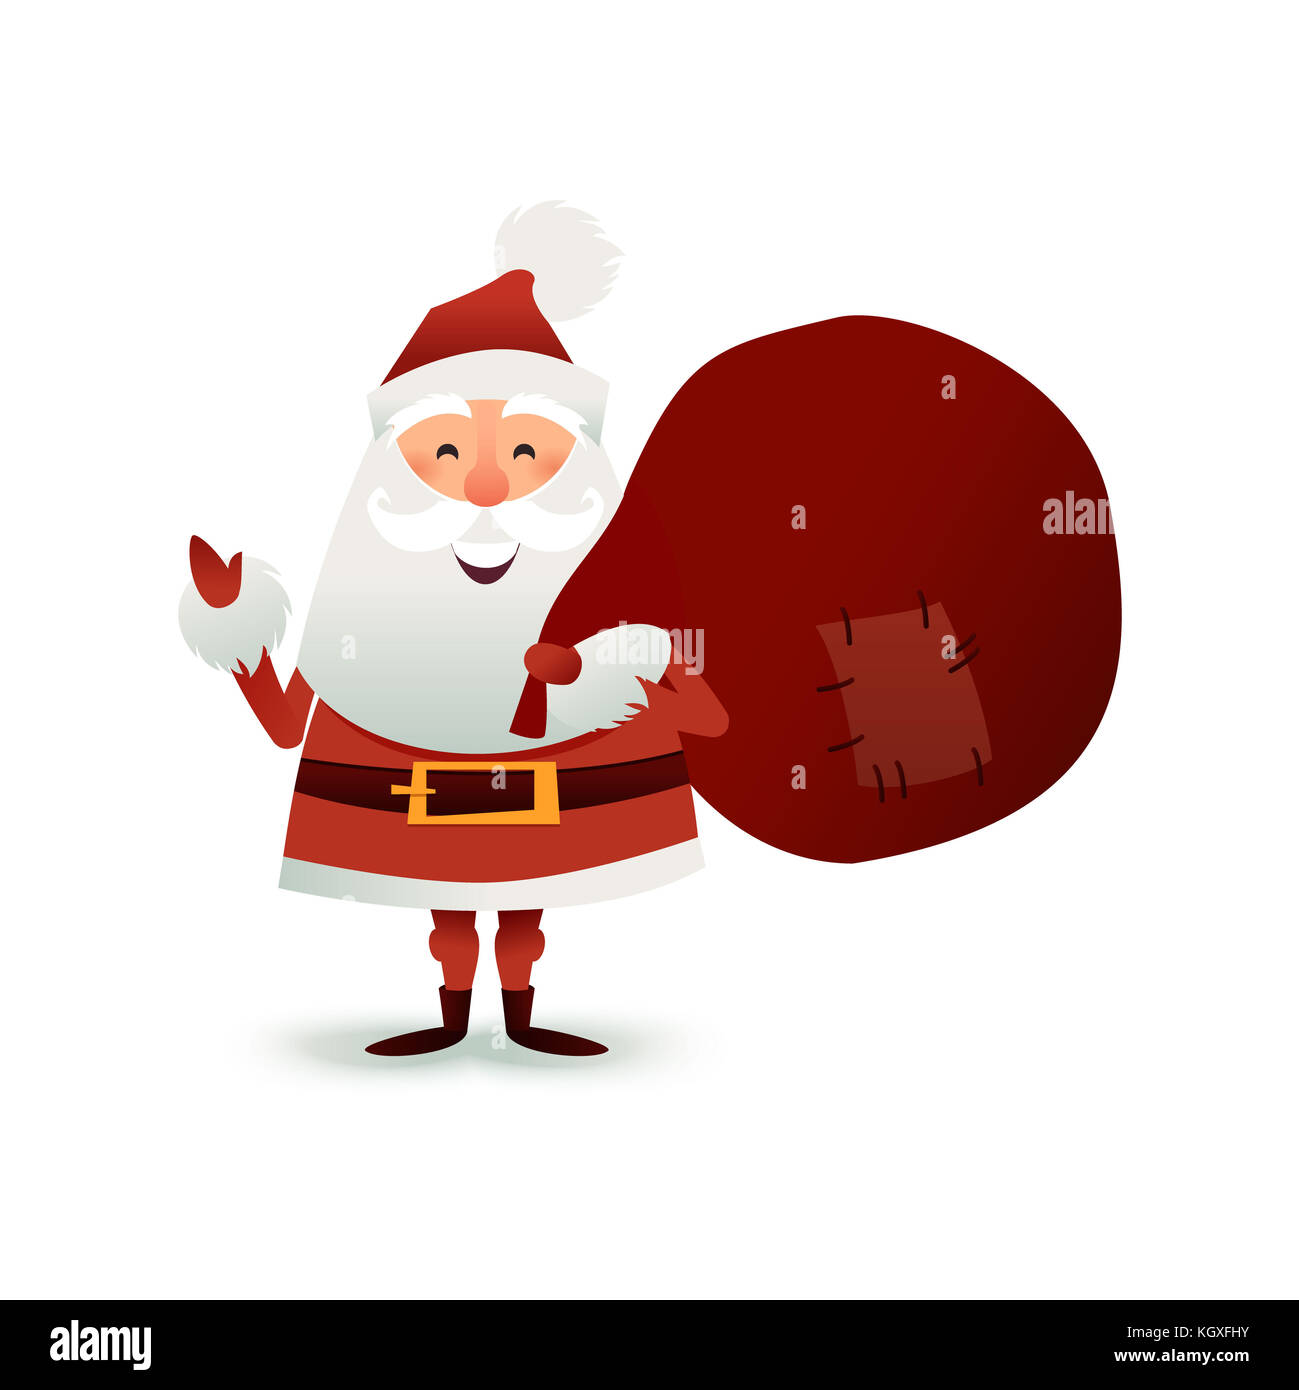 Weihnachtsmann mit Sack voller Geschenk- und Geschenkschachteln. Frohe Weihnachten Vater Cartoon-Figur. Niedlicher Weihnachtsmann für das Weihnachtsdesign. Grußkarte für das neue Jahr zur Einladung, herzlichen Glückwunsch. Flache Abbildung. Stockfoto